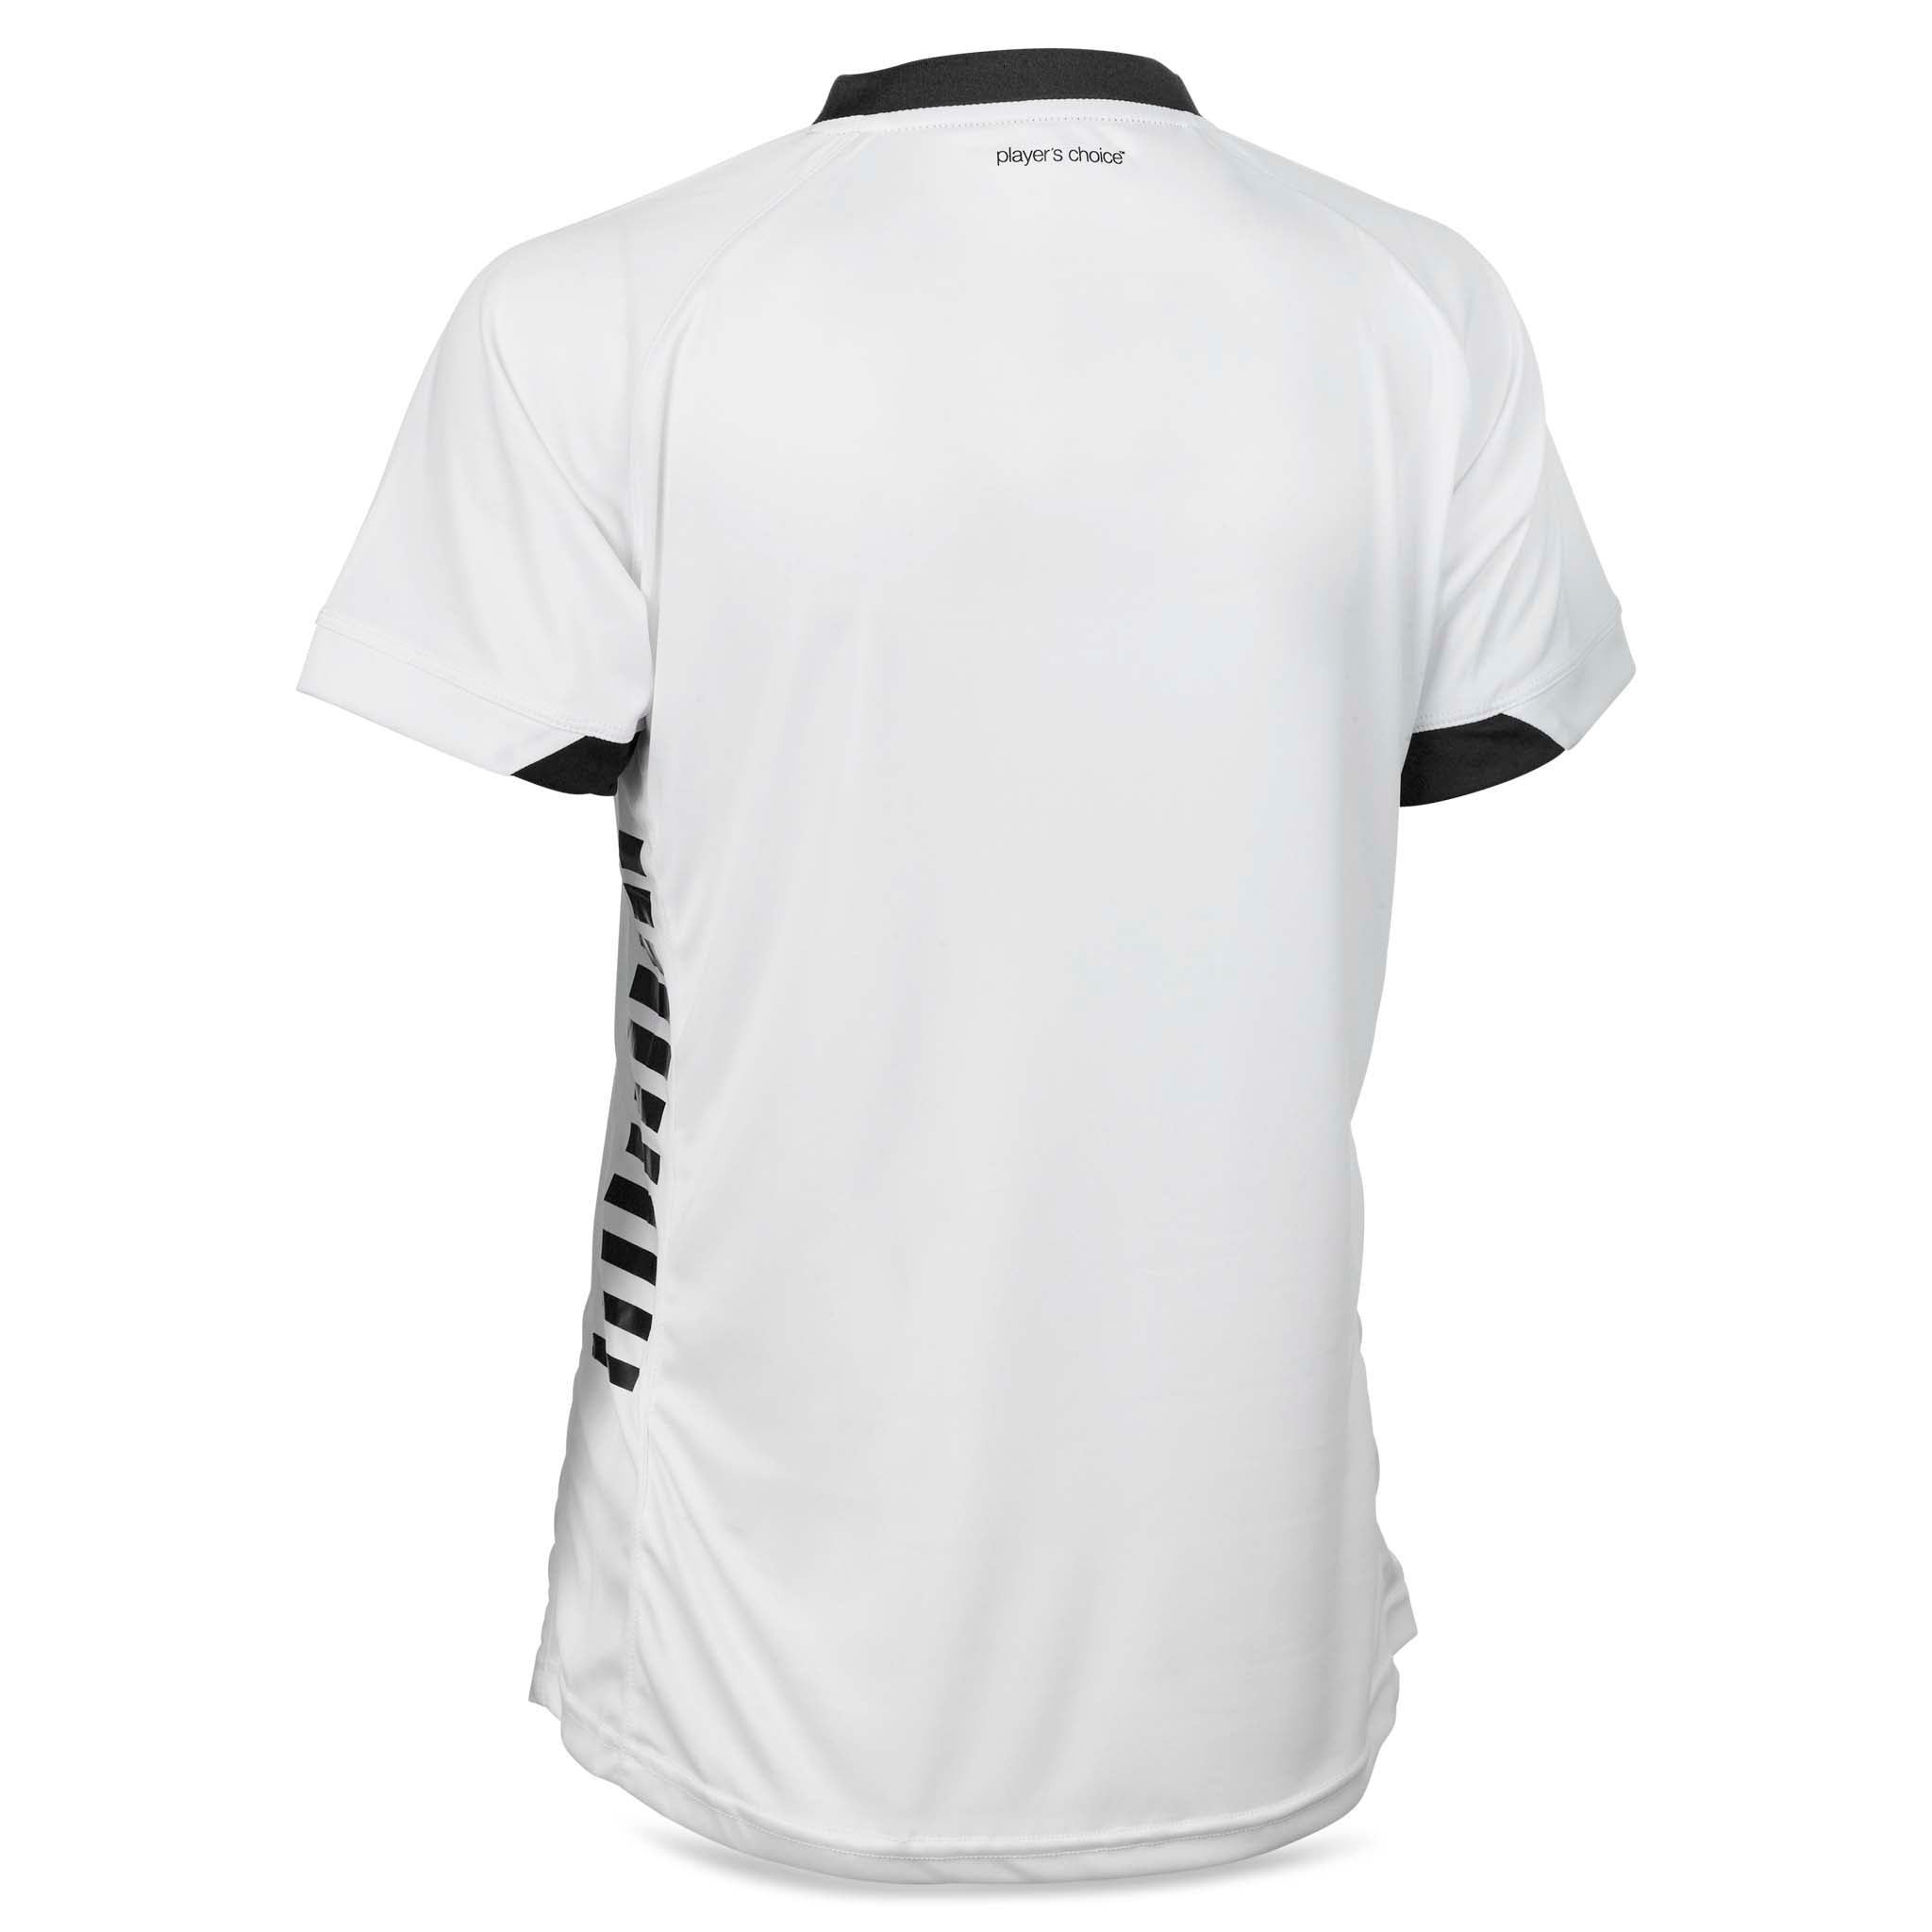 Spain Short Sleeve player shirt - women #colour_white/black